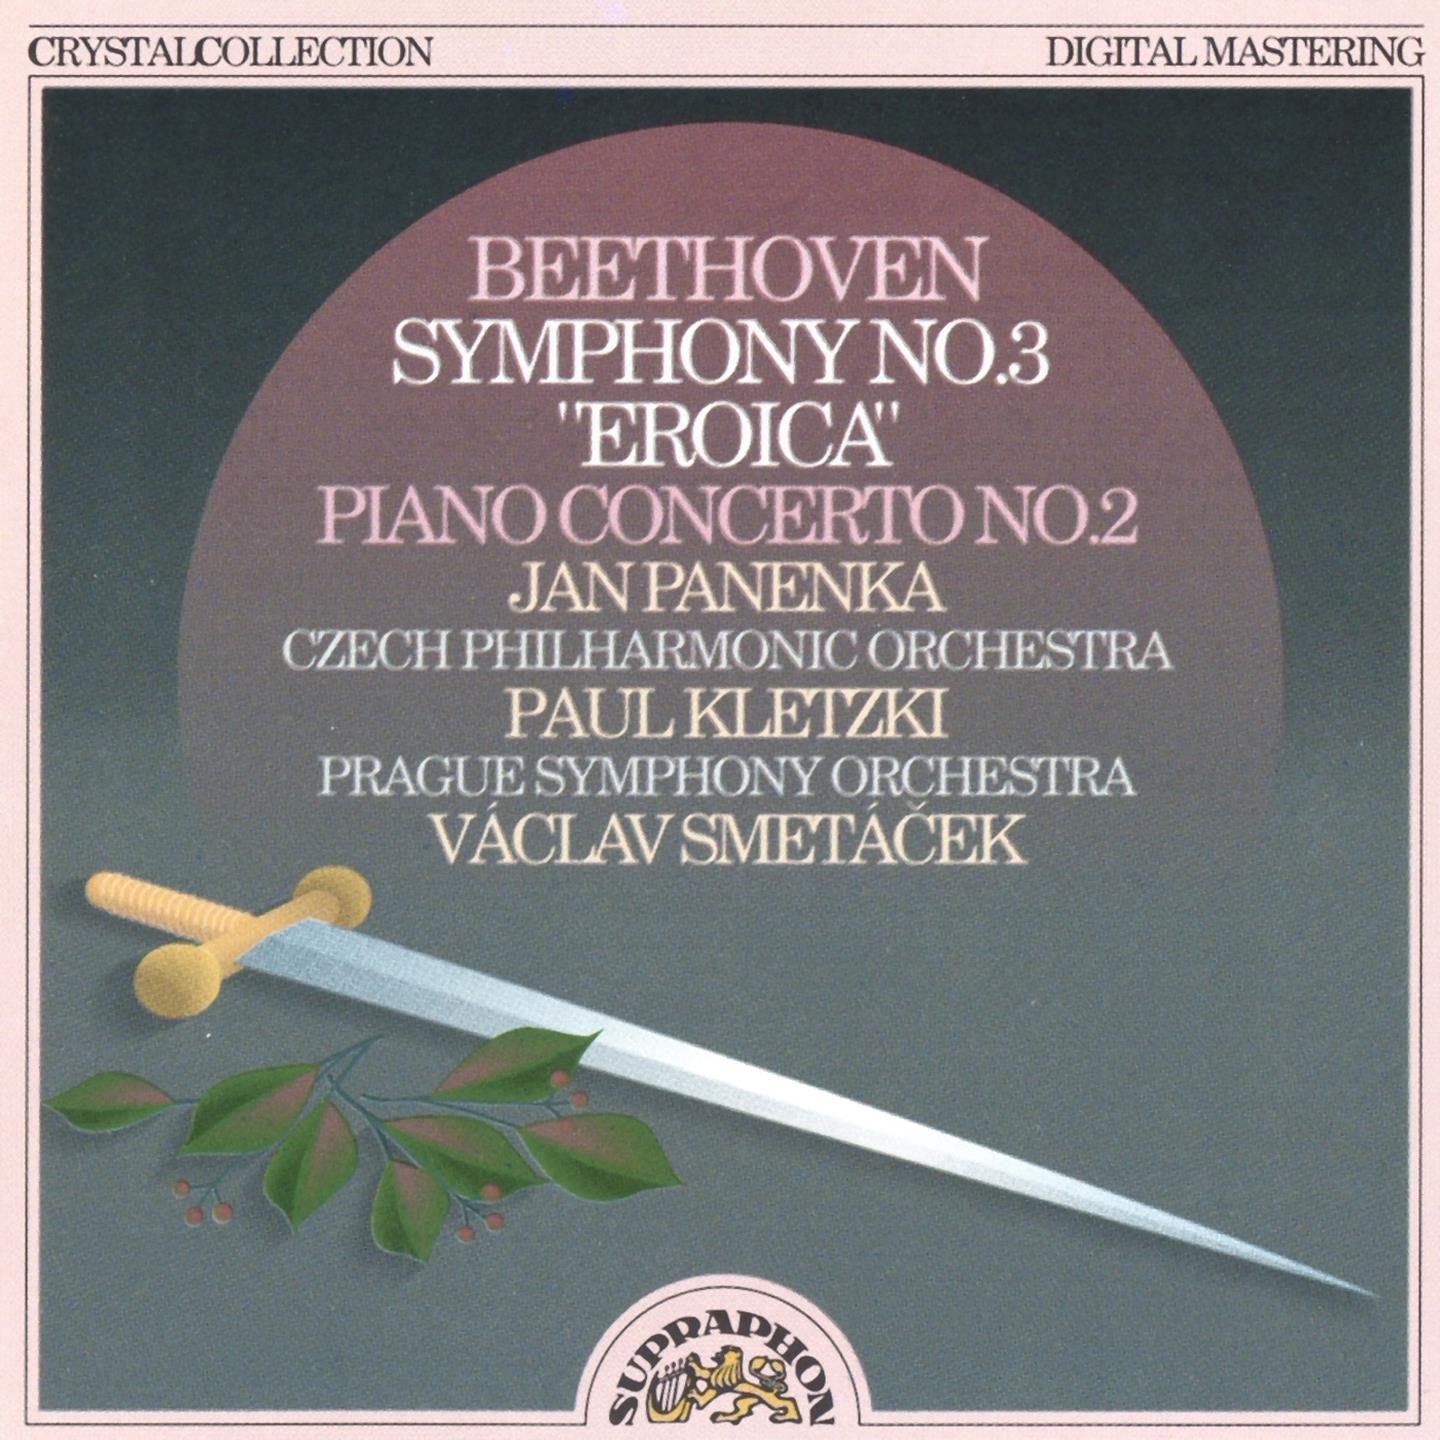 Piano Concerto No. 2 in B-Flat Major, Op. 19, .: I. Allegro con brio